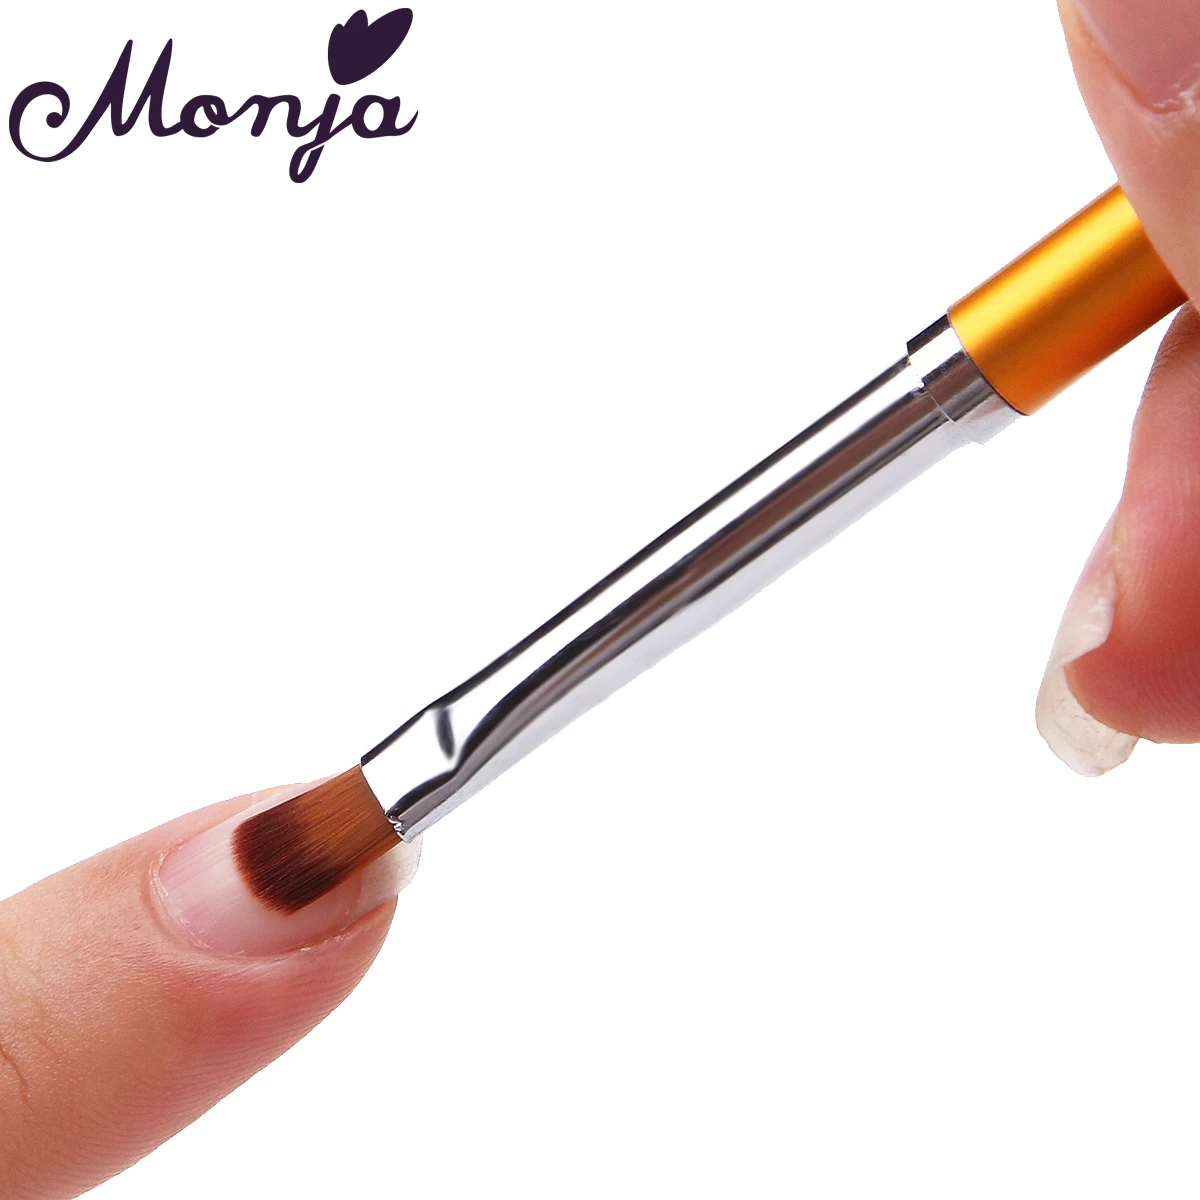 Monja, 3 шт., для дизайна ногтей, с металлической ручкой, акриловый УФ-гель для наращивания, для создания лепестков, цветов, рисования, кисти для рисования, маникюрные инструменты